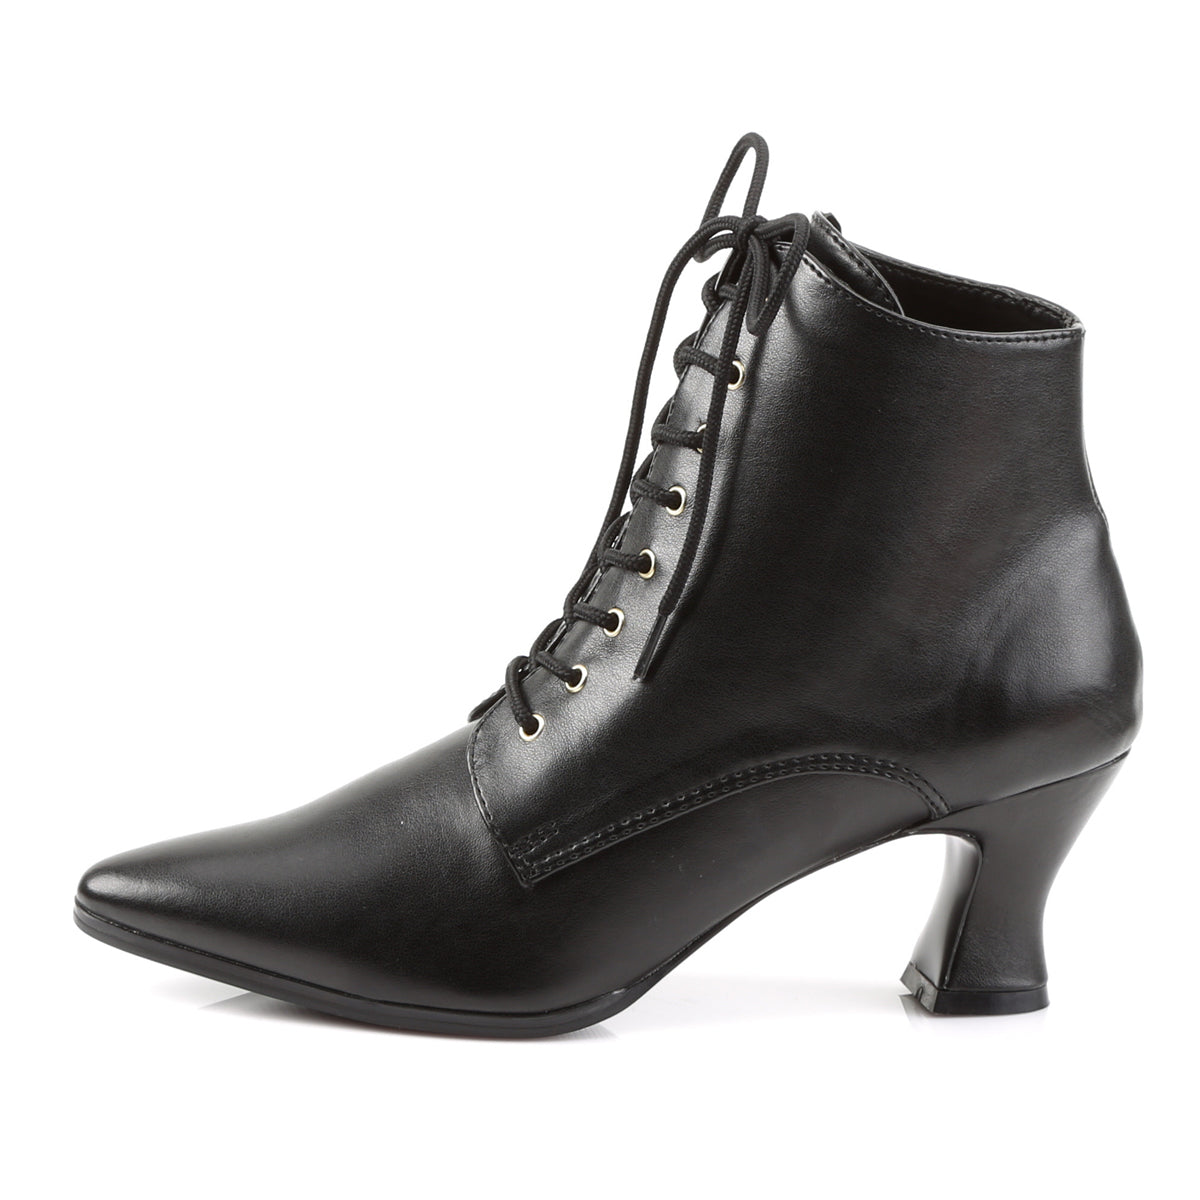 VICTORIAN-35 Funtasma Fantasy Black Pu Women's Boots [Fancy Dress Footwear]